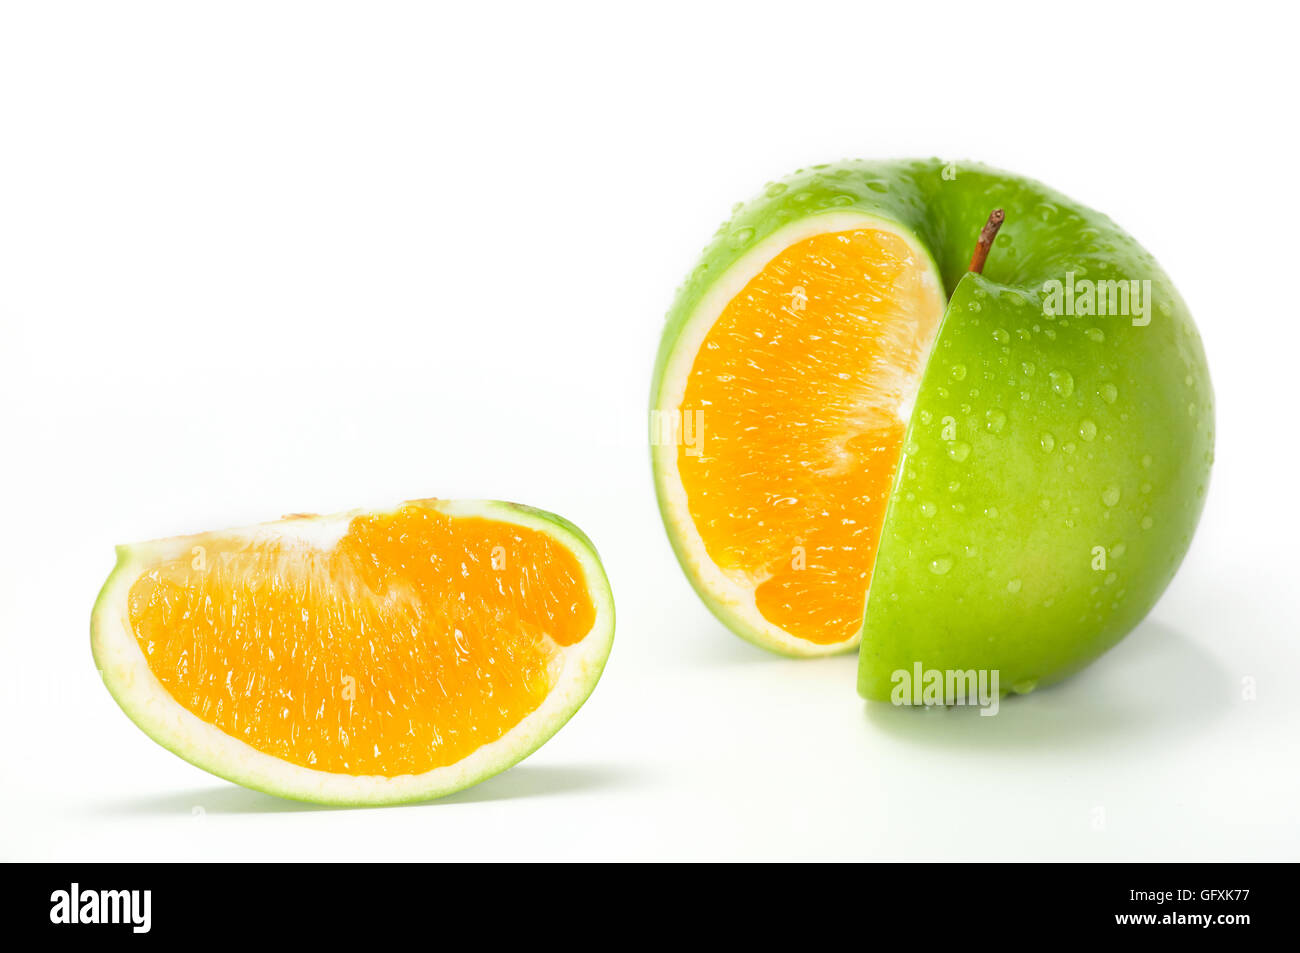 Manzana naranja híbrido. Imagen cercana de manzana verde fresco combinado con naranja. Foto de stock